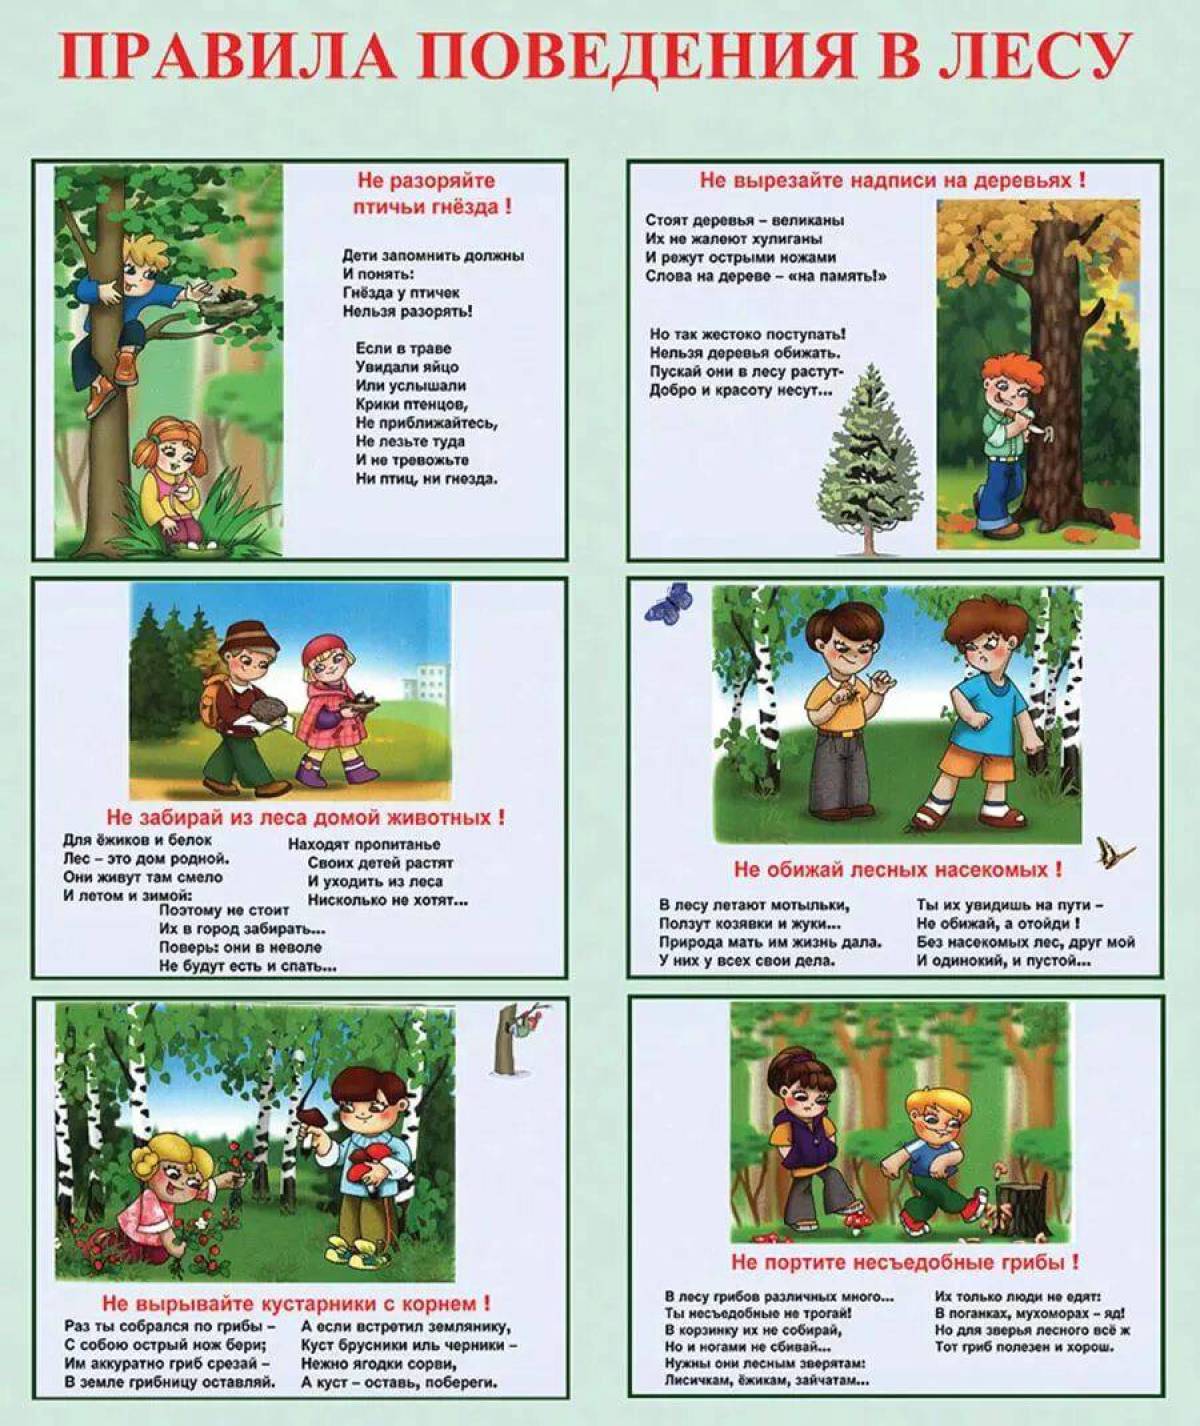 Безопасность на отдыхе на природе. Памятка правила поведения в лесу. Правила поведения в лесу и на природе. Правила безопасного поведения в лесу для дошкольников. Правила поведения в Дему.